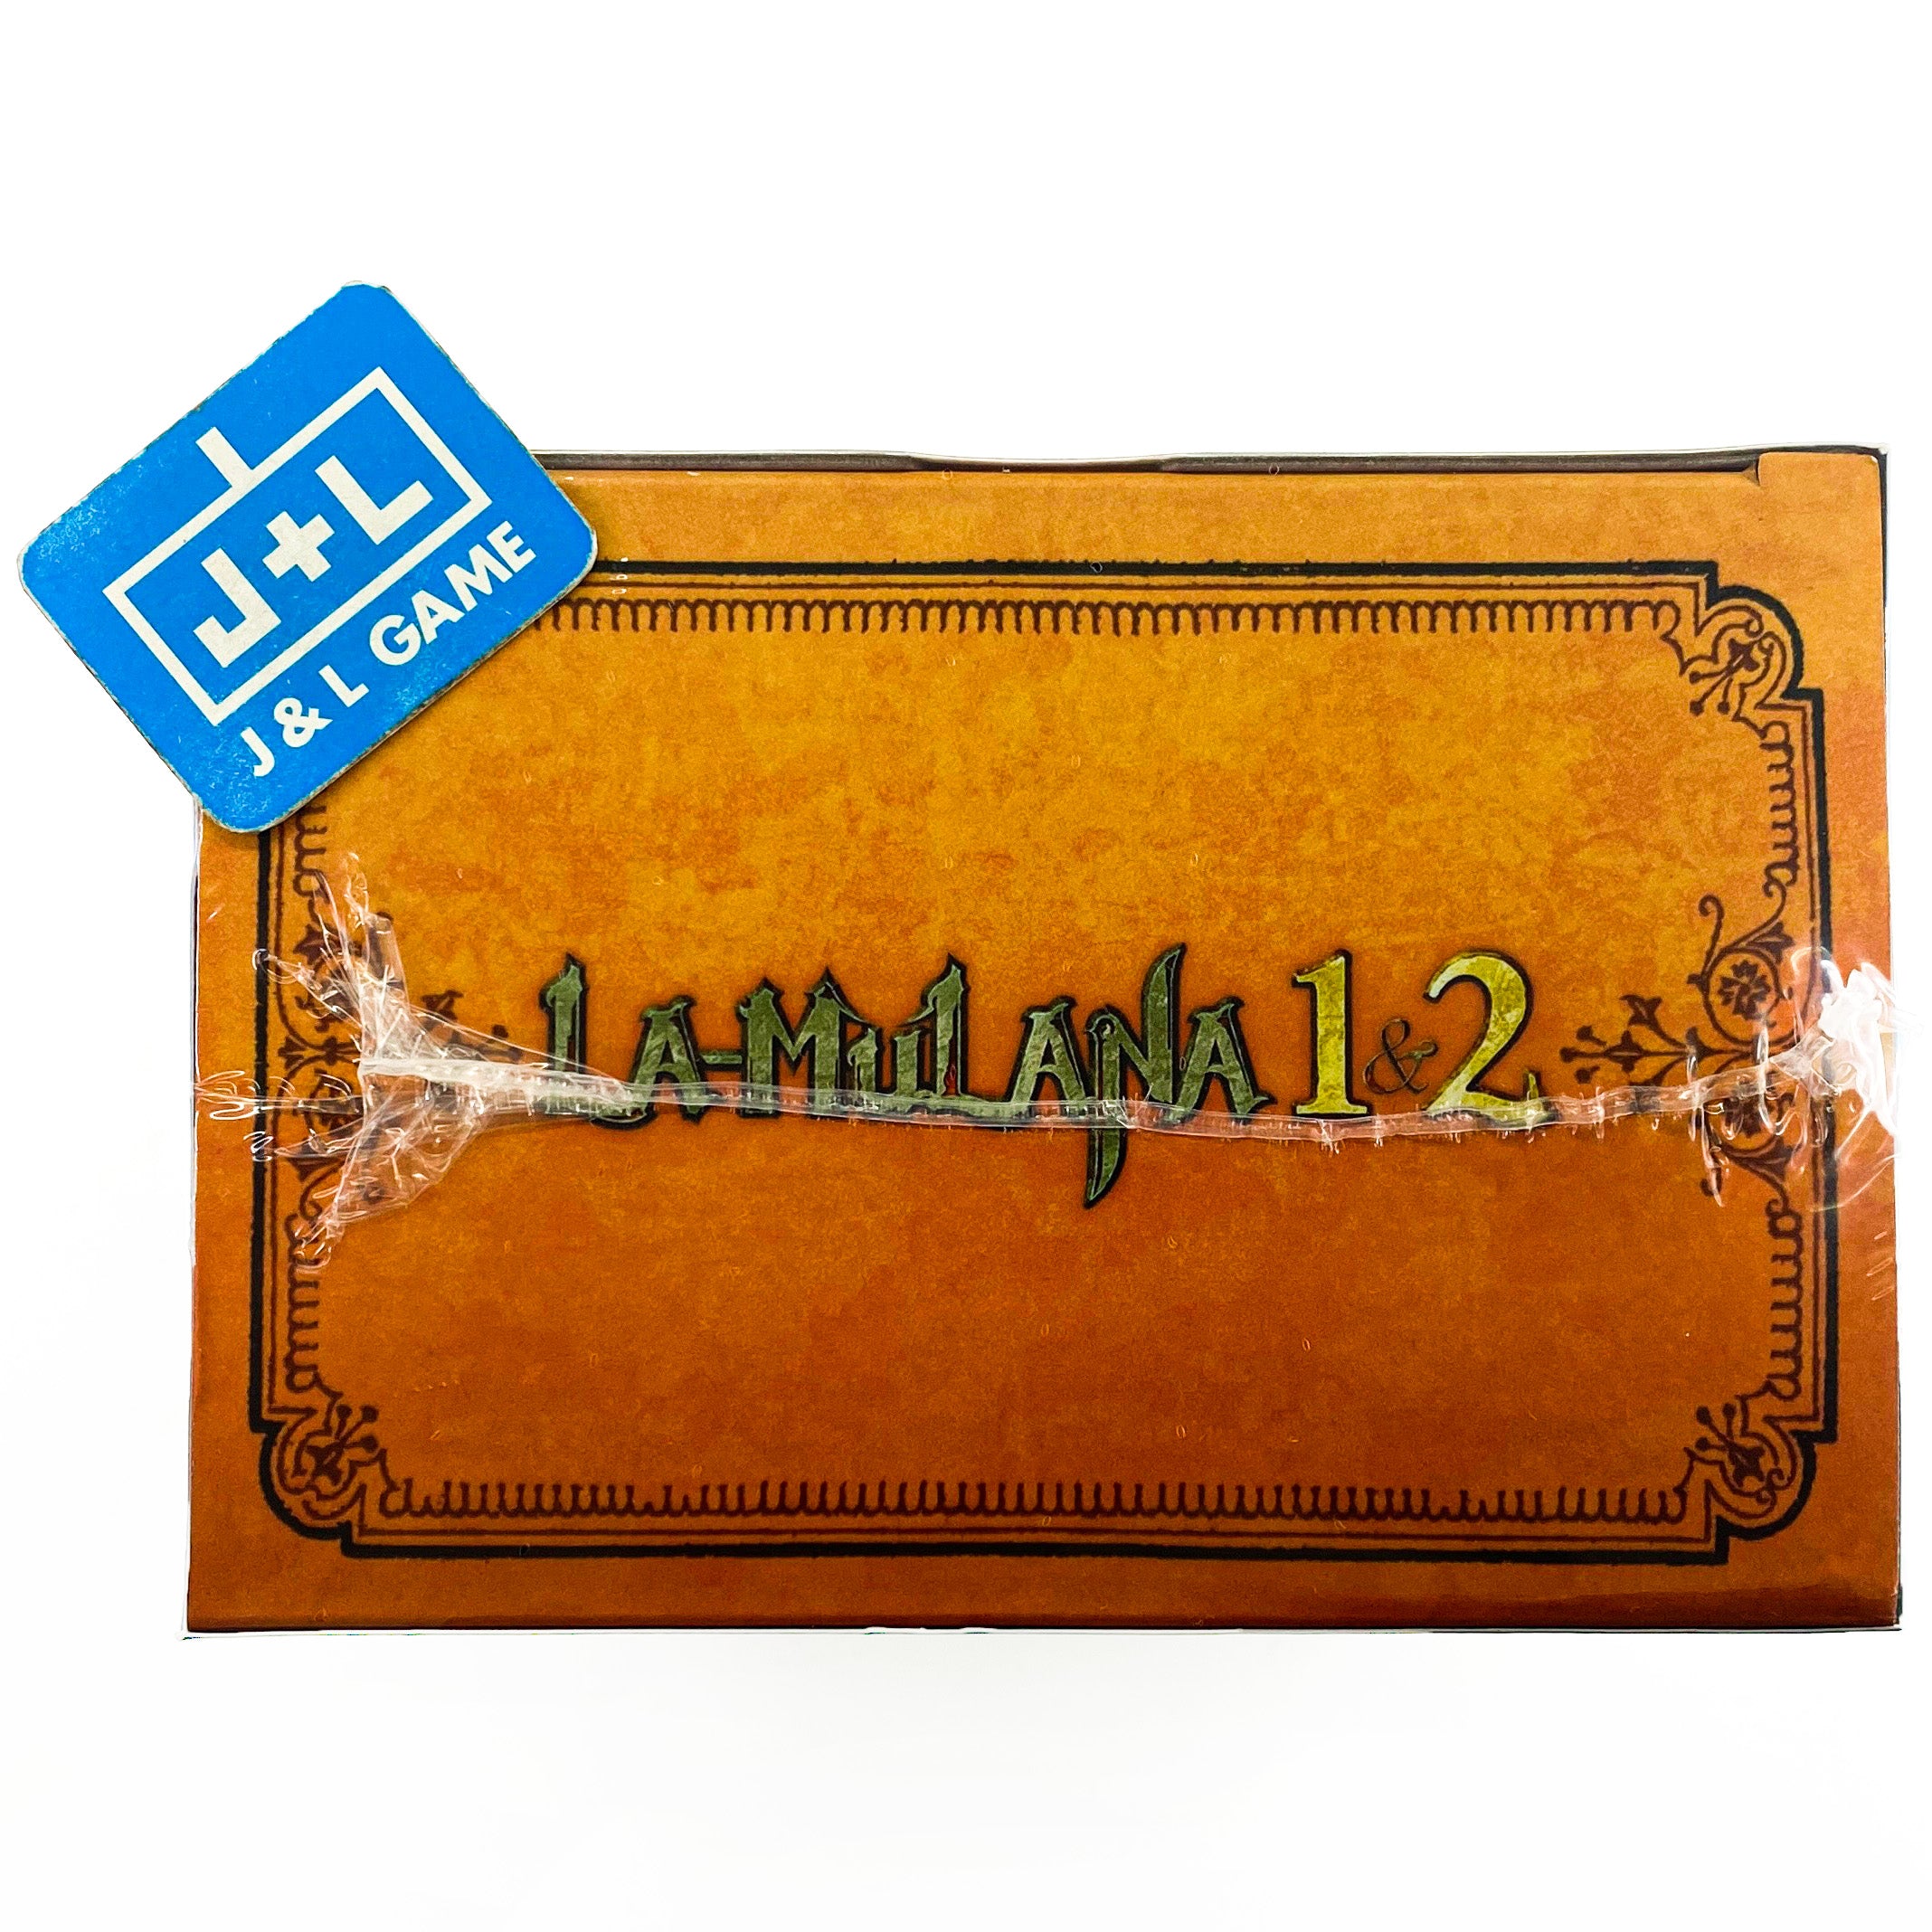 LA-MULANA 1 & 2 (Hidden Treasures Edition) - (PS4) PlayStation 4 Video Games NIS America   